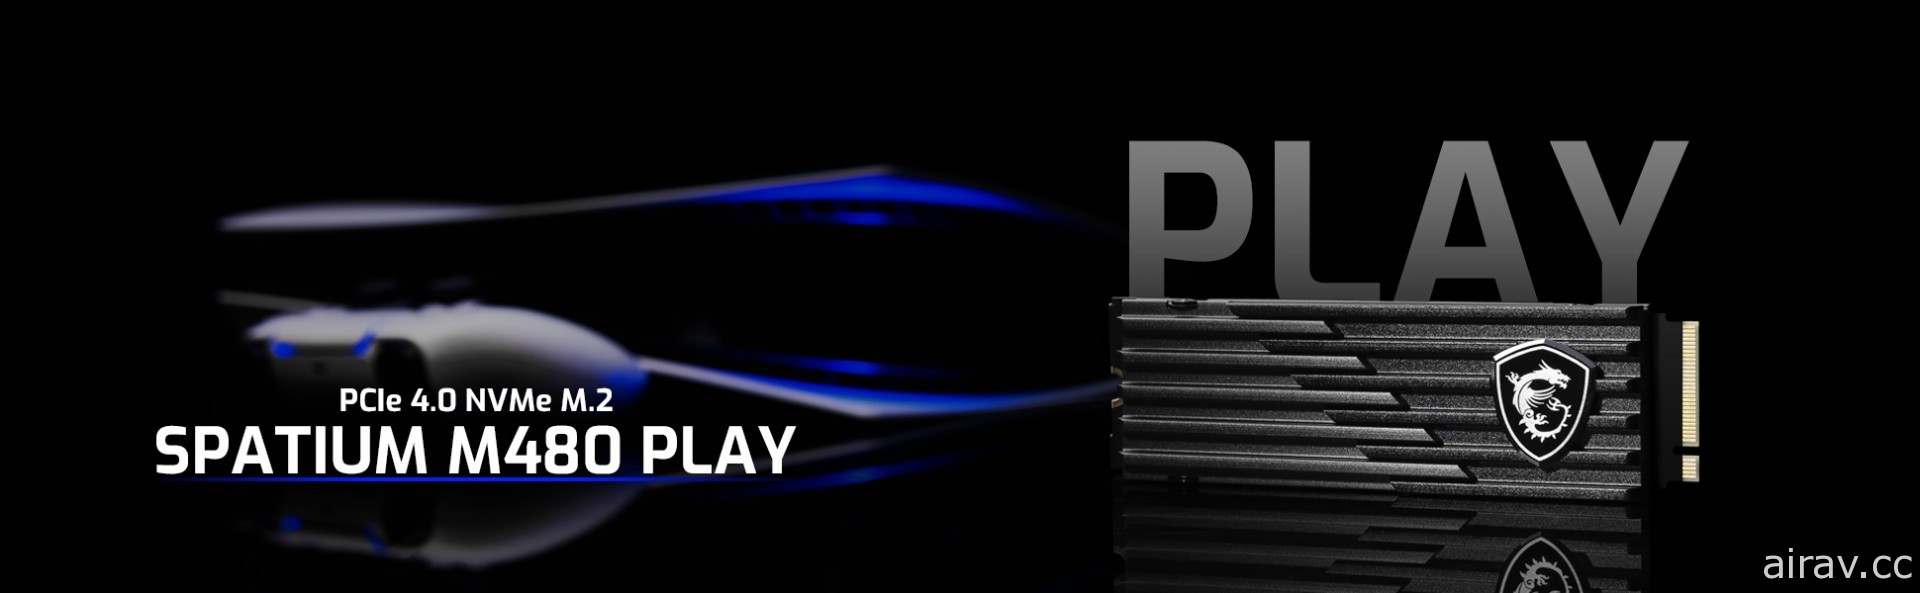 MSI 推出 PS5 相容 SSD「SPATIUM M480 PLAY」 提供極速讀寫與高效散熱等特色